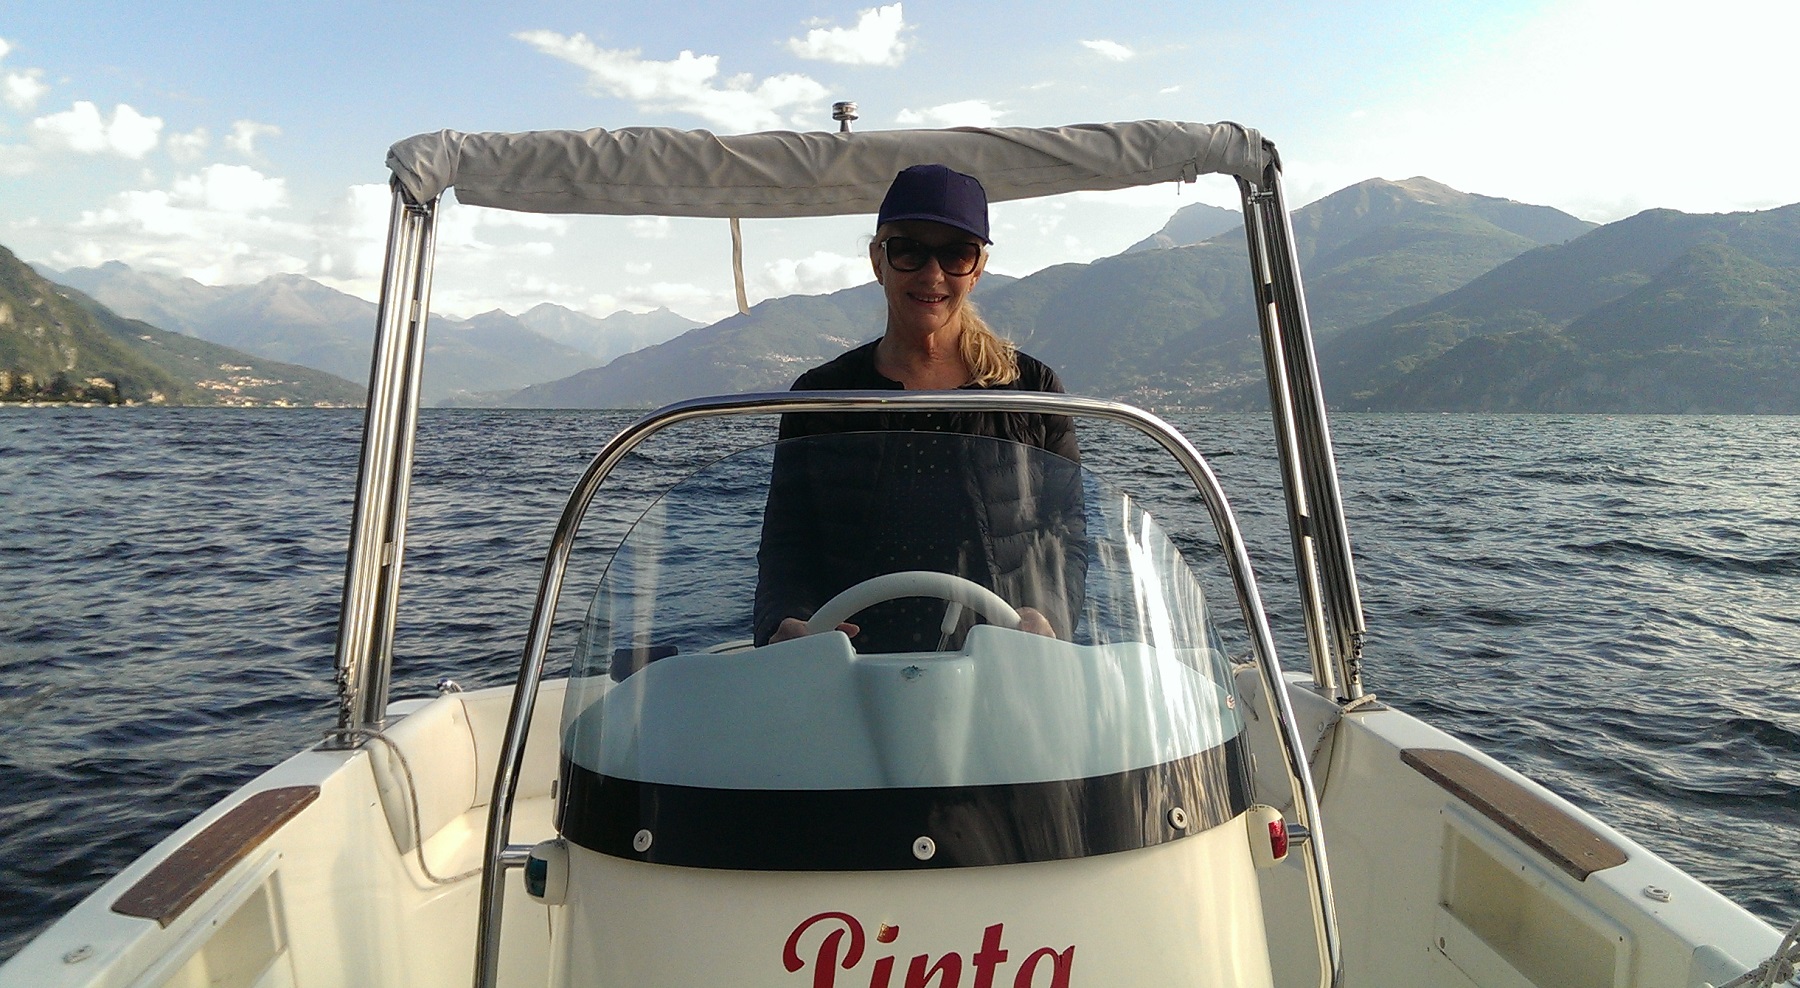 Lake Como 2015